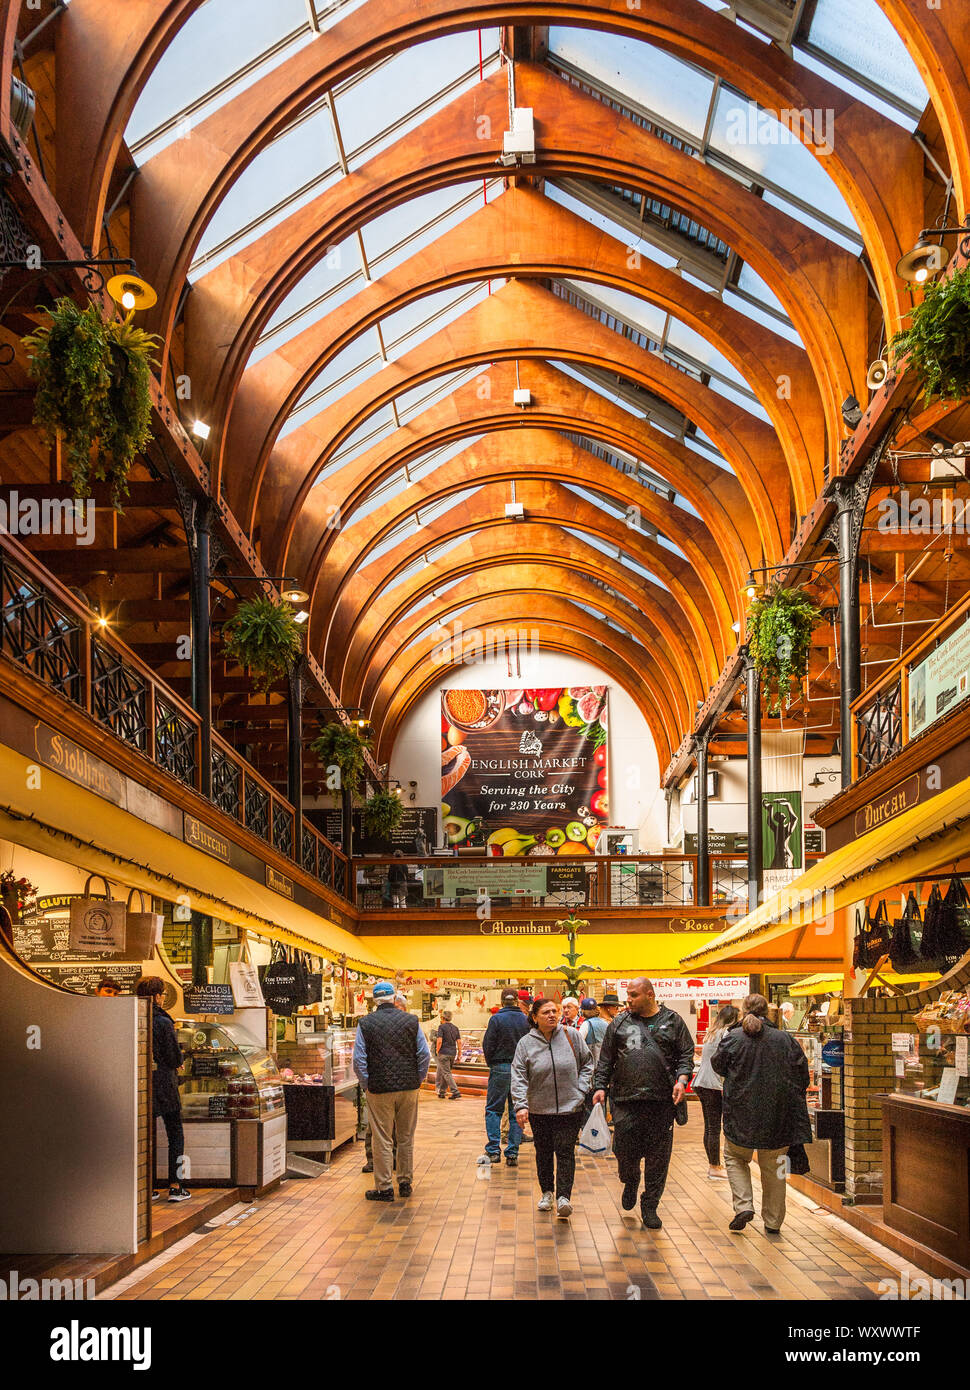 La ville de Cork, Cork, Irlande. 18 Septembre, 2019. Intérieur du marché anglais, une célèbre attraction touristique de la ville avec des stands avec freesh Banque D'Images